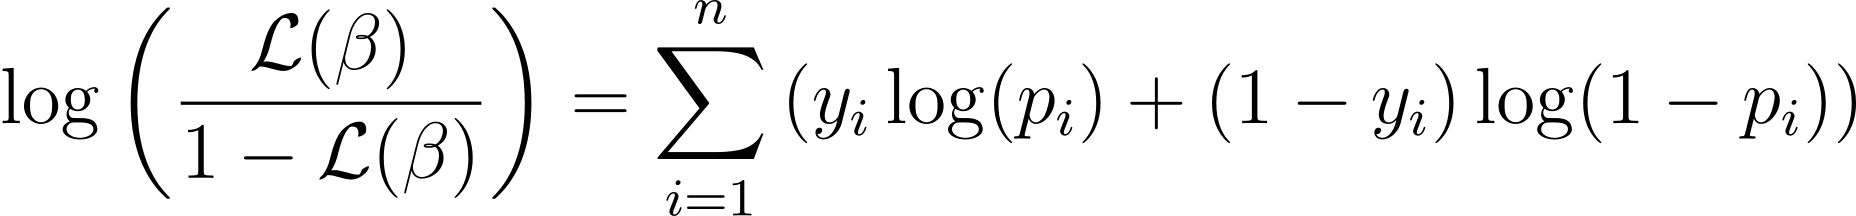 Membangun Model Prediktif: Regresi Logistik dengan Python